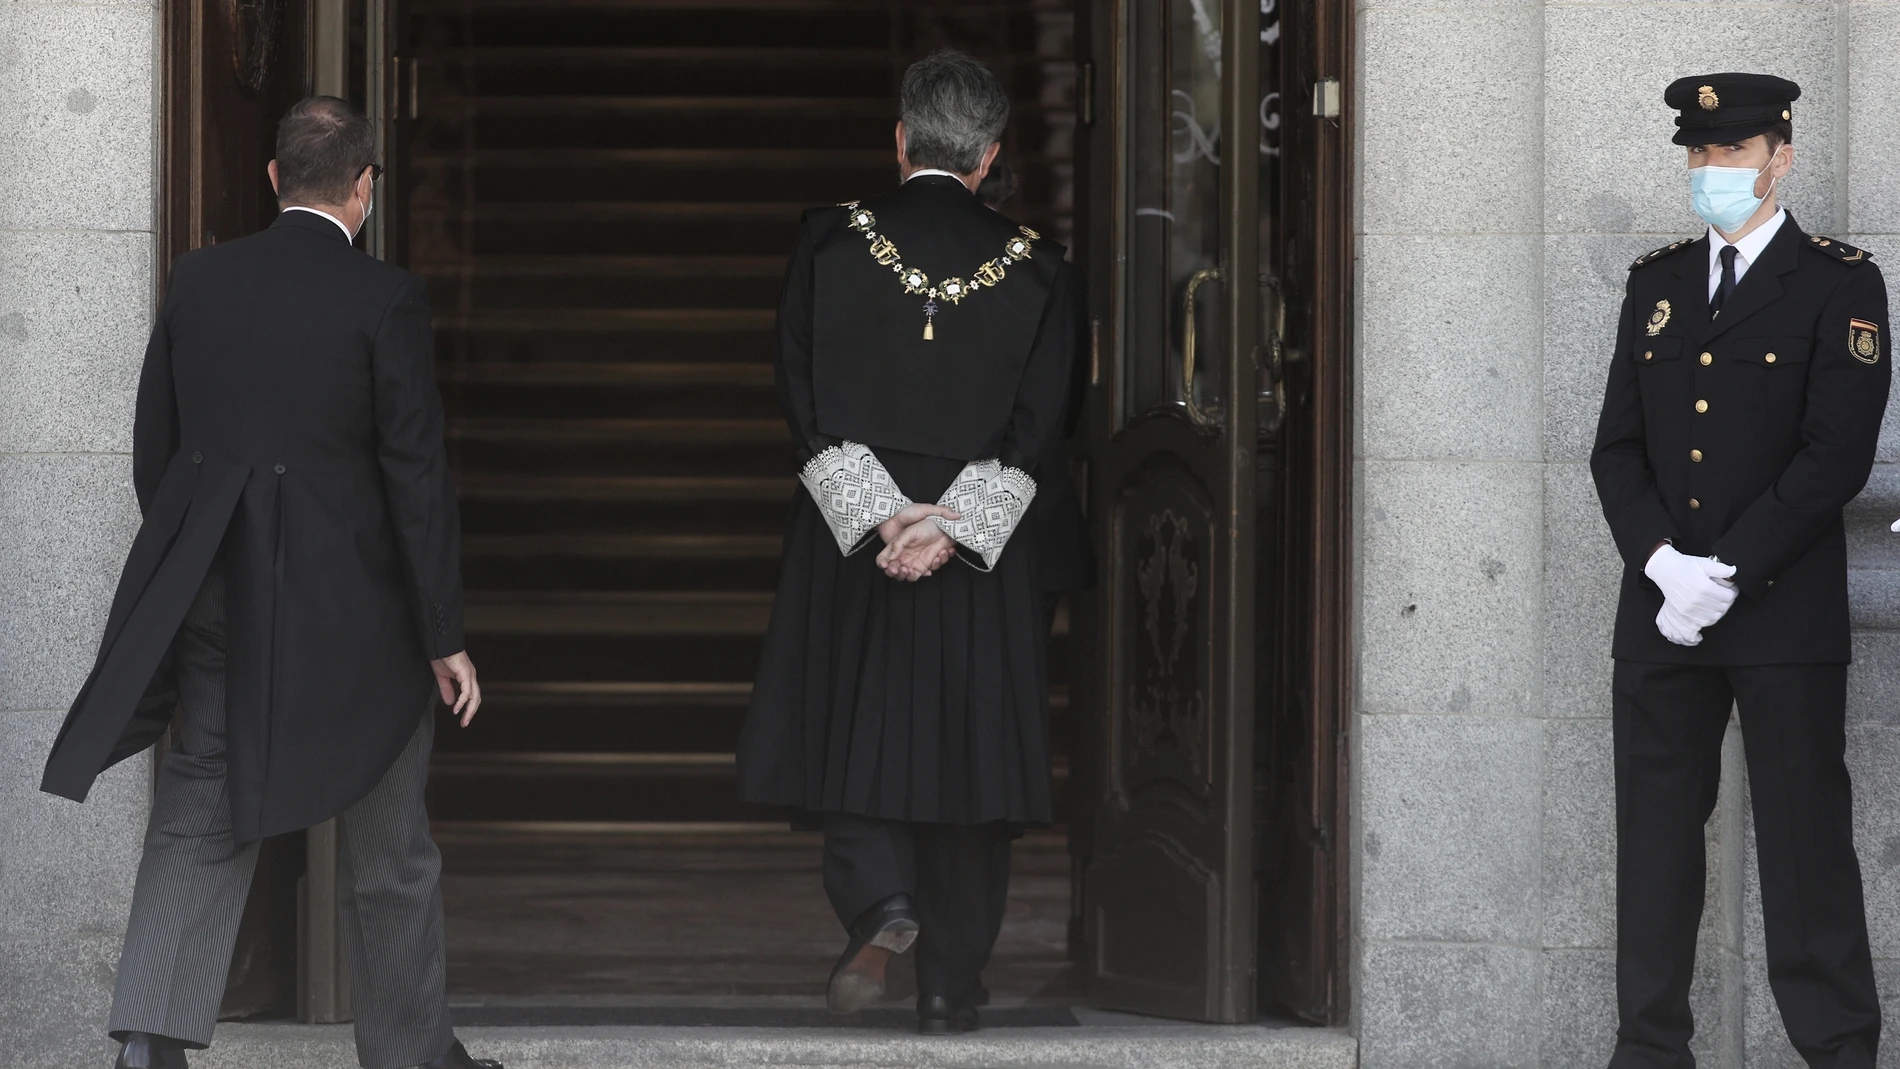 El presidente del Tribunal Supremo y del Consejo General del Poder Judicial (CGPJ), Carlos Lesmes entra al Palacio de Justicia, para asistir al acto de apertura del año judicial 2020/2021, en Madrid